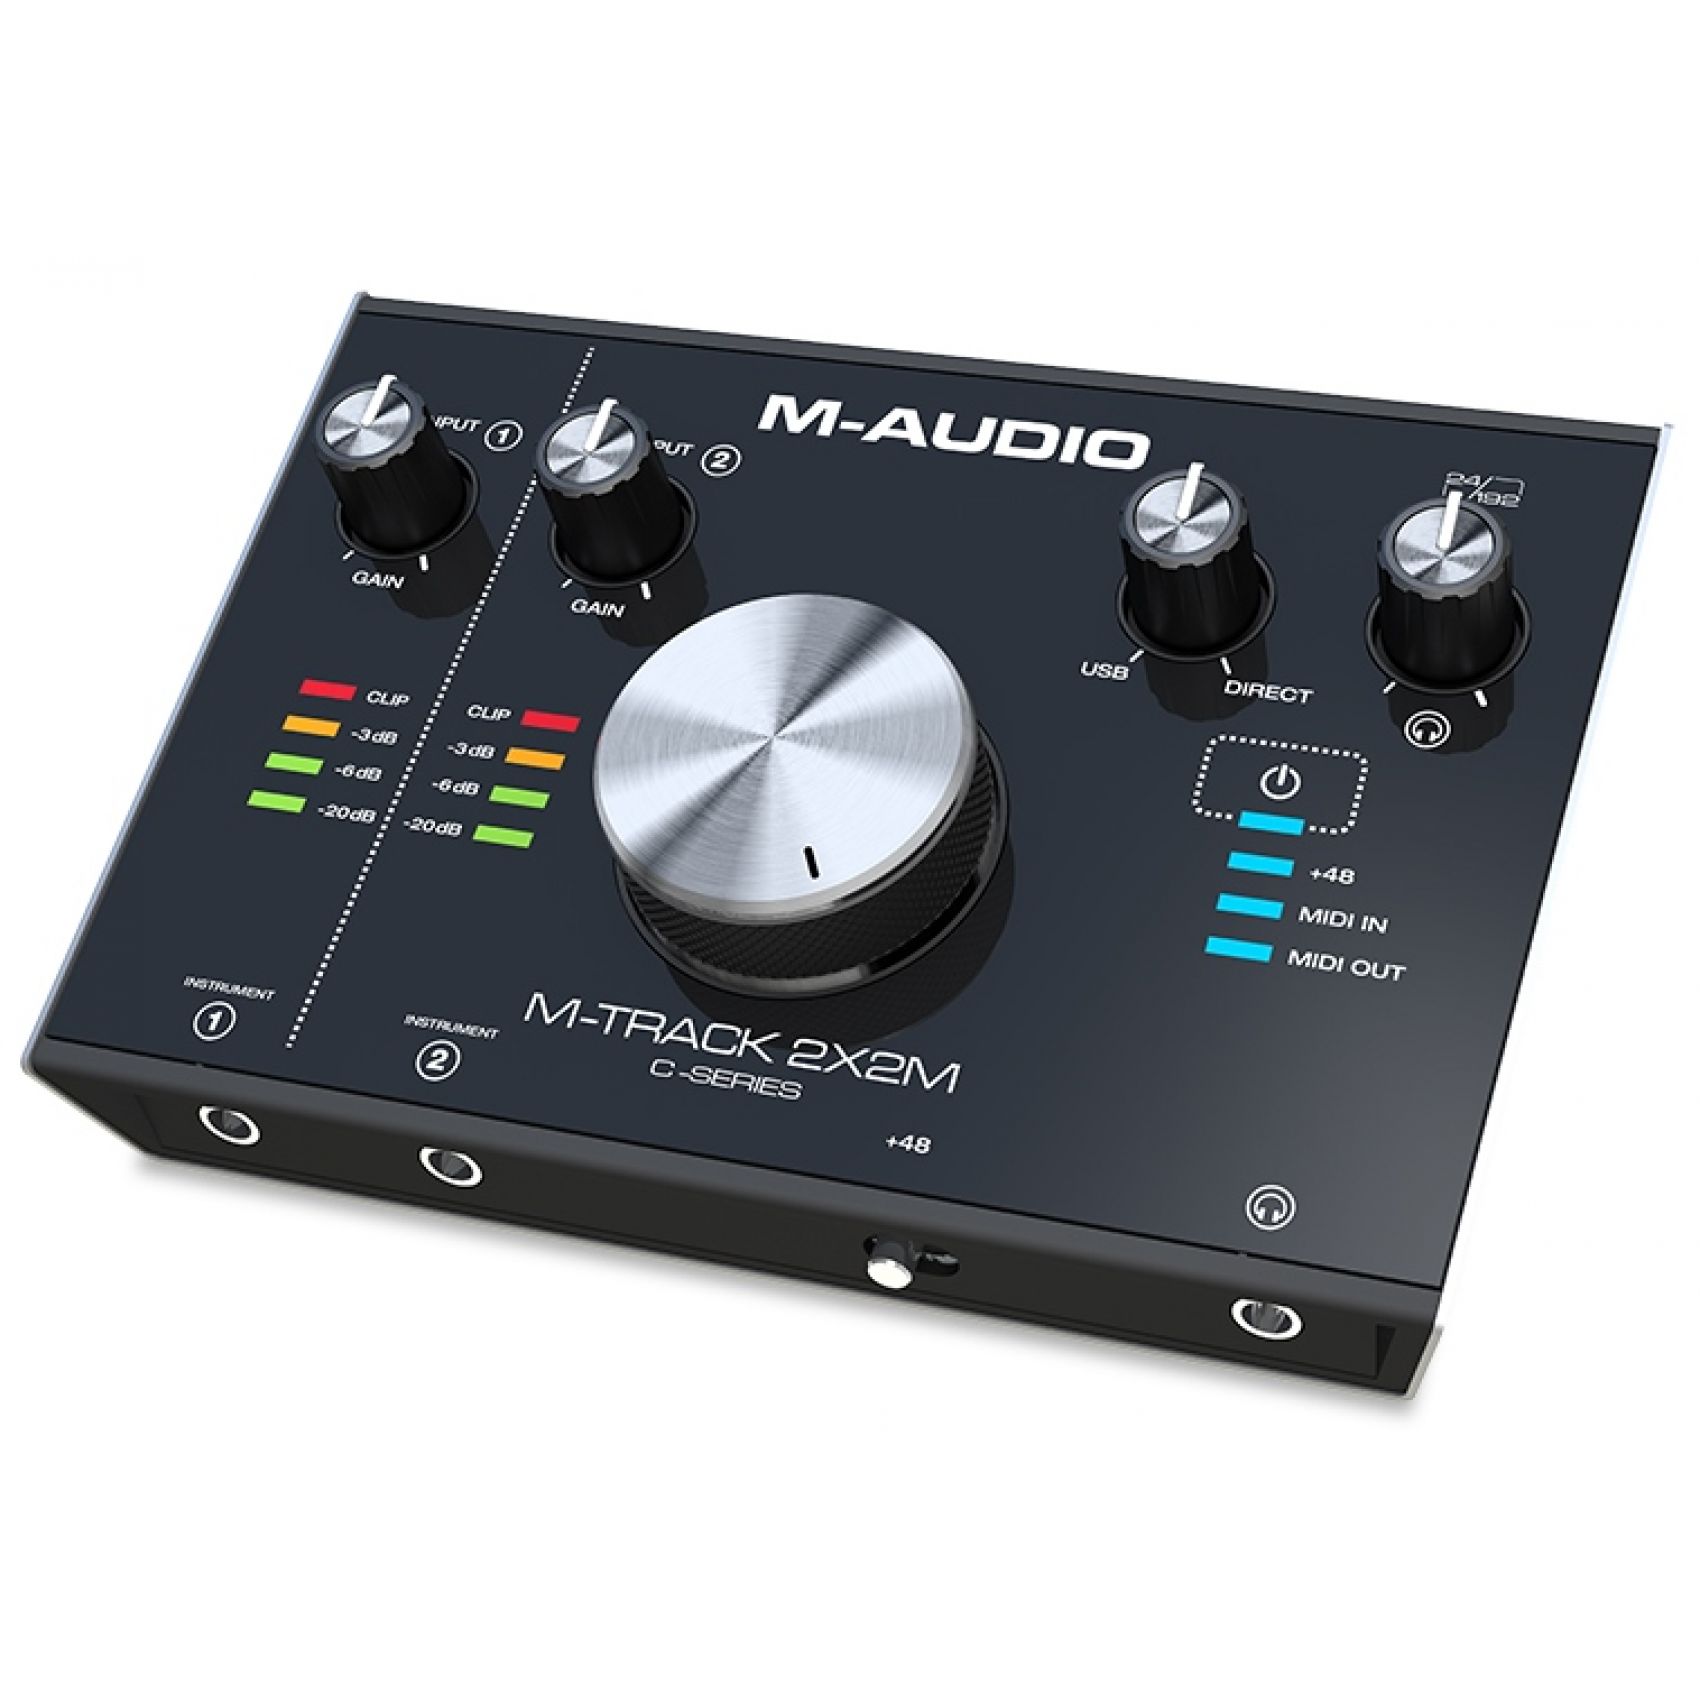 M-AUDIO M-Track 2x2M Interfaccia Audio USB